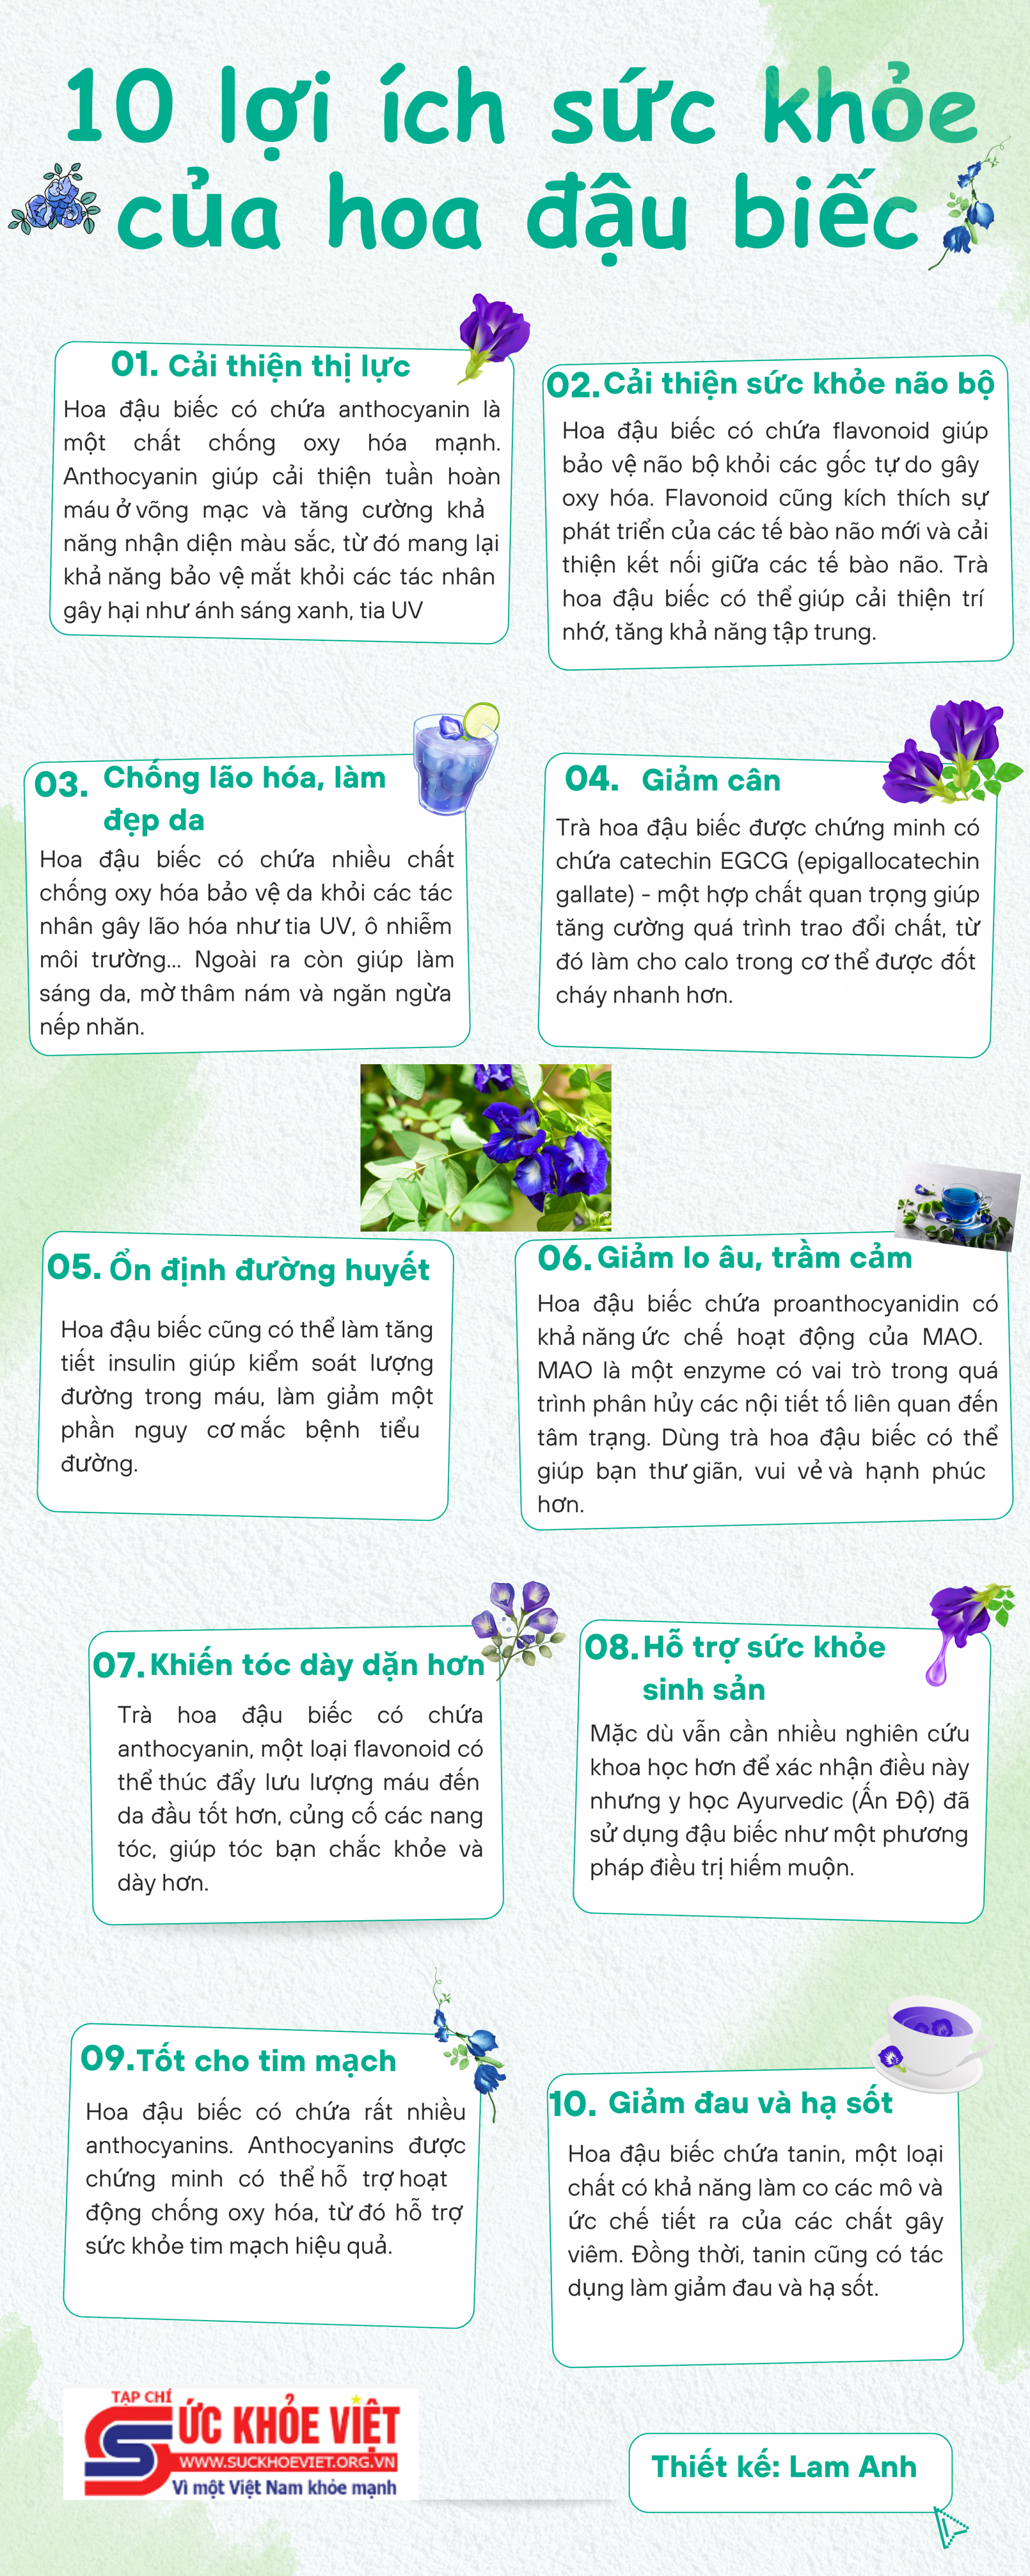 [Infographic] 10 lợi ích sức khỏe của hoa đậu biếc